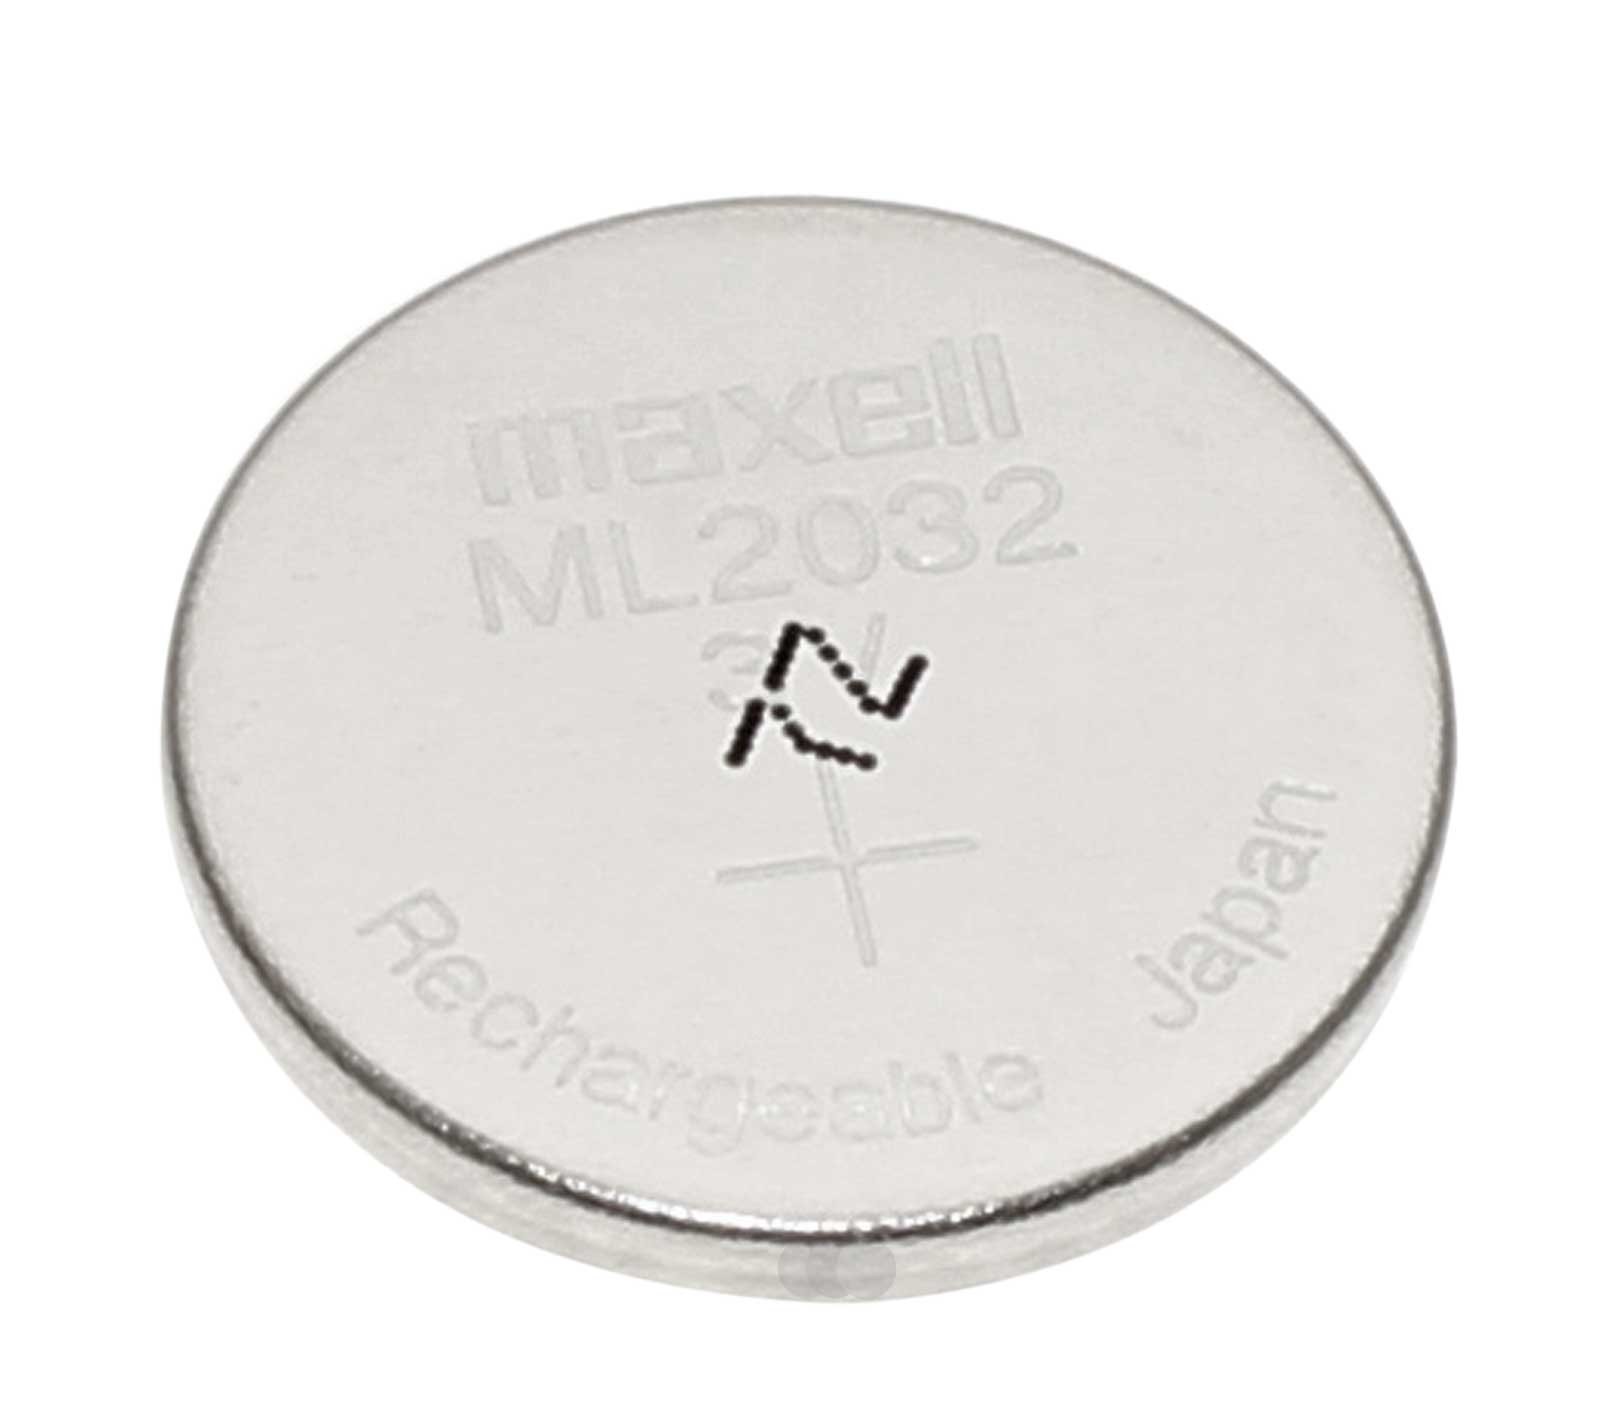 Maxell ML2032 Knopfzelle Akku Batterie, ersetzt CR2032, für Logitech K750 mit 3V und 65mAh